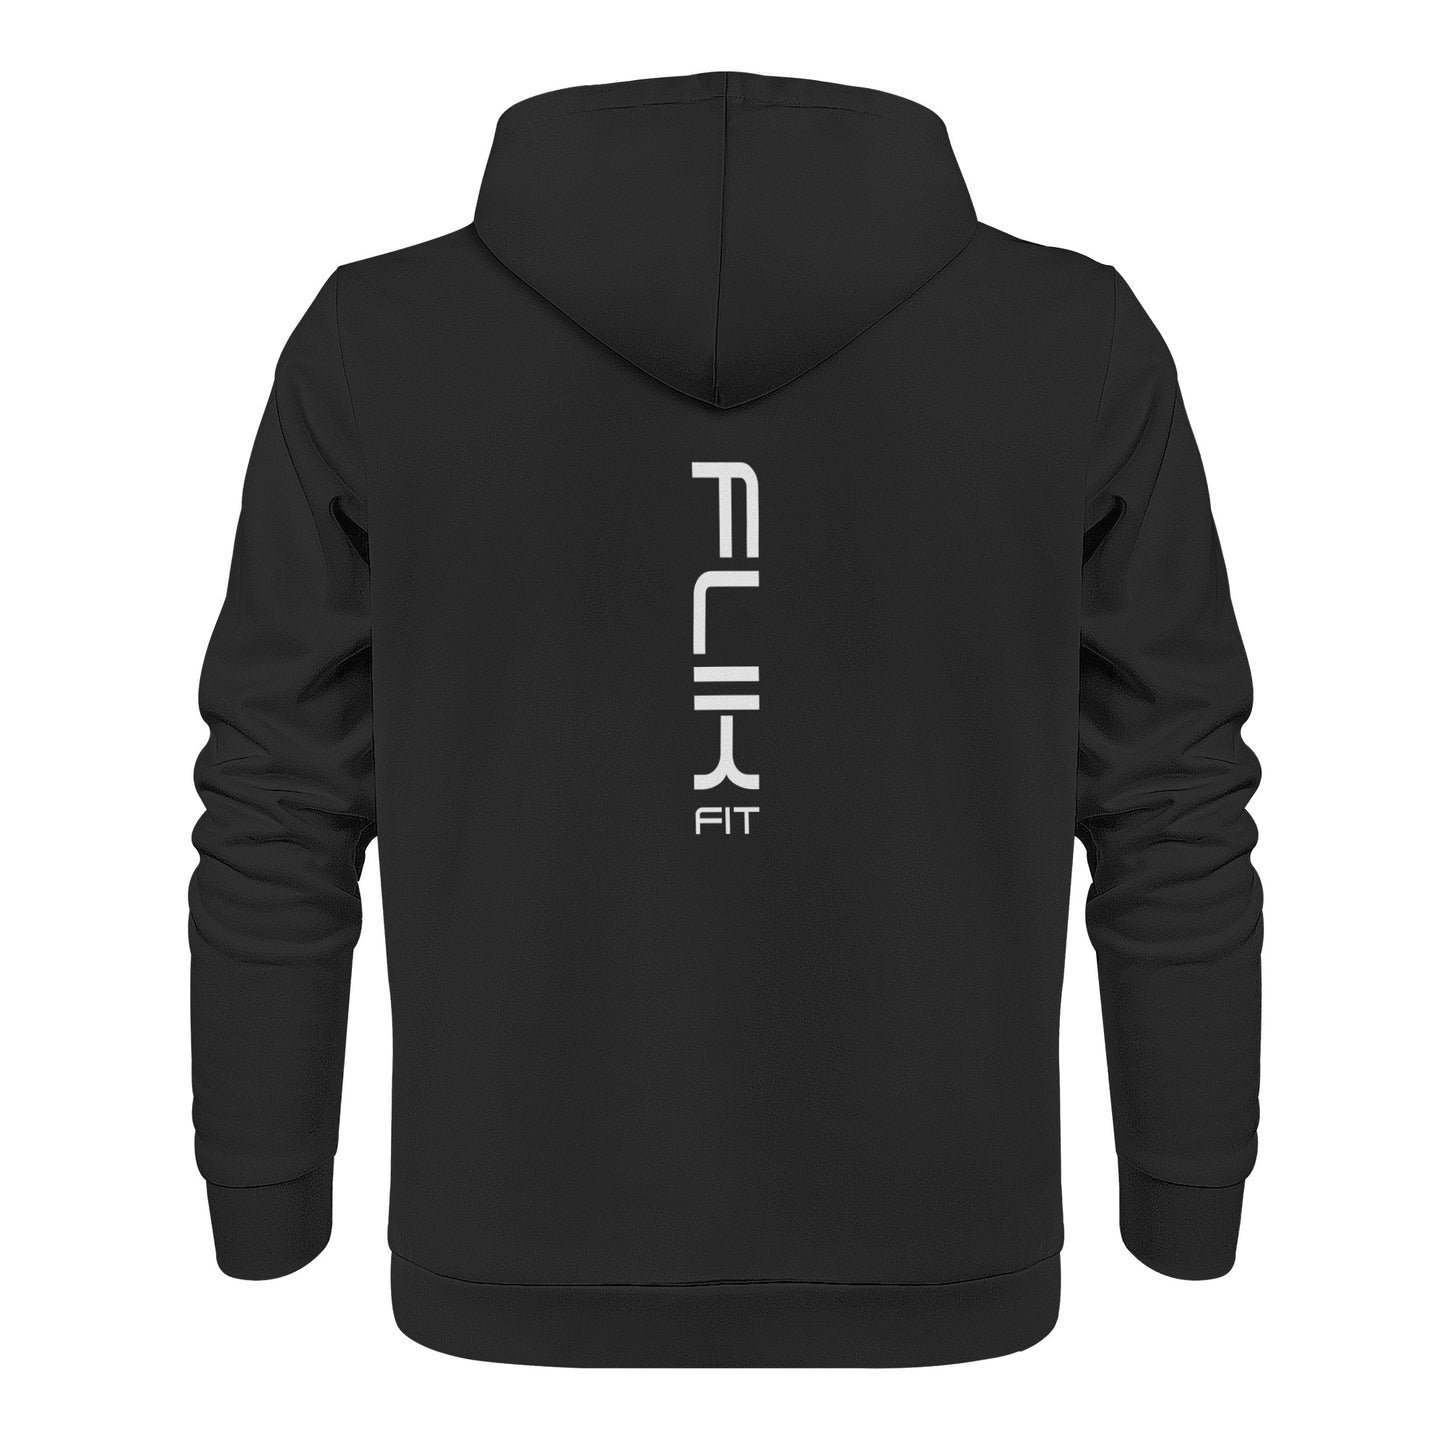 FlikFit Hoodie in Black